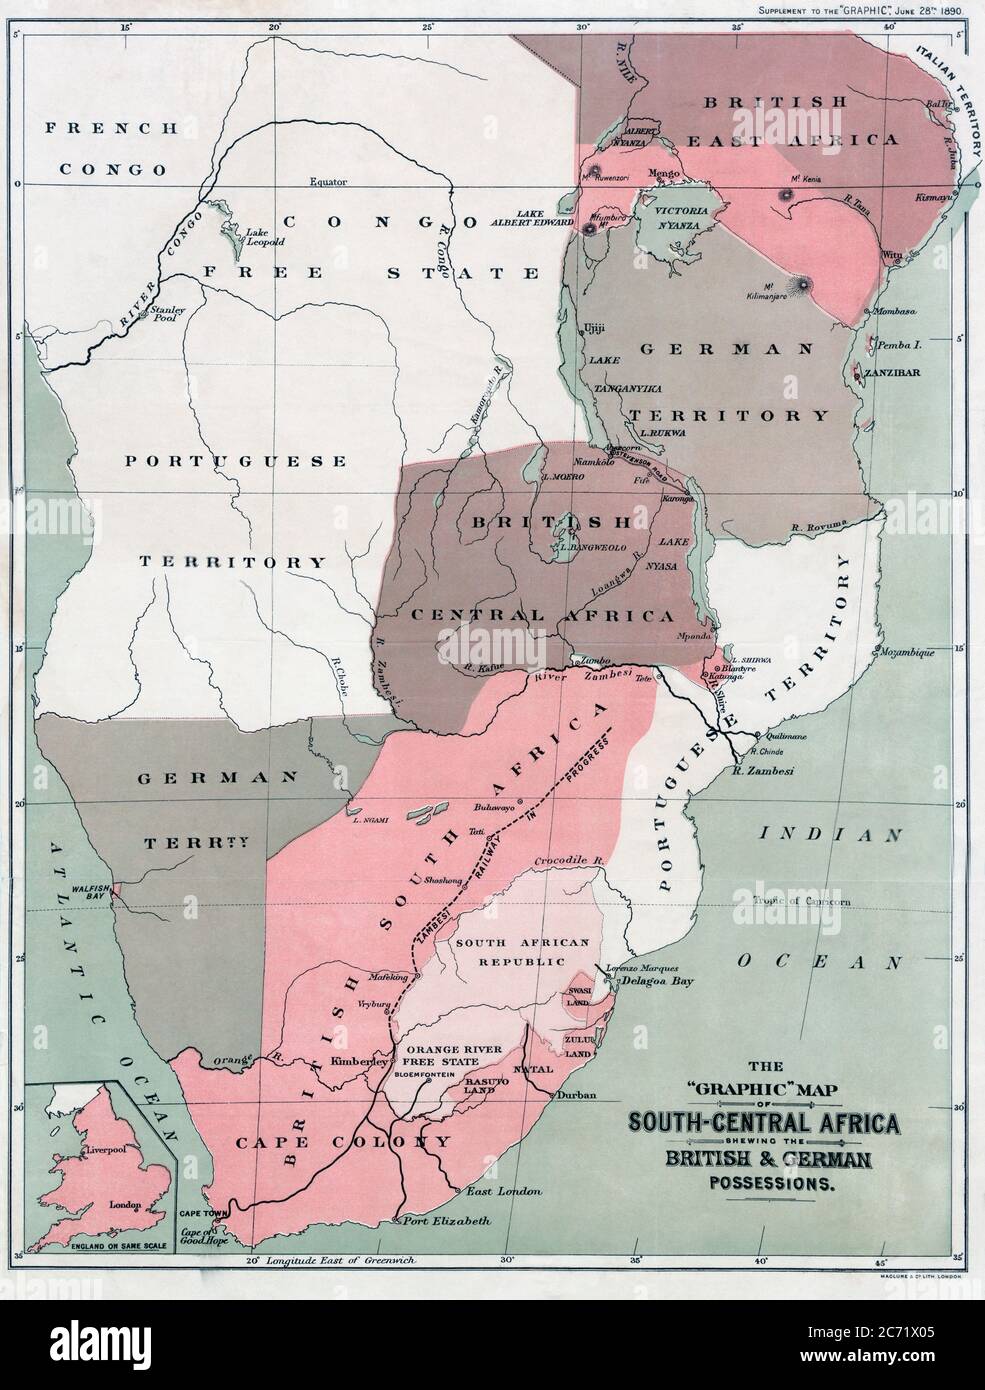 Carte de l'Afrique du Sud-Centre montrant les possessions britanniques et allemandes dans les années 1890. Après une carte publiée dans l'édition du 25 juin 1890 du graphique. La carte détaillée, en bas à gauche, montre l'Angleterre à la même échelle que la carte africaine. Banque D'Images